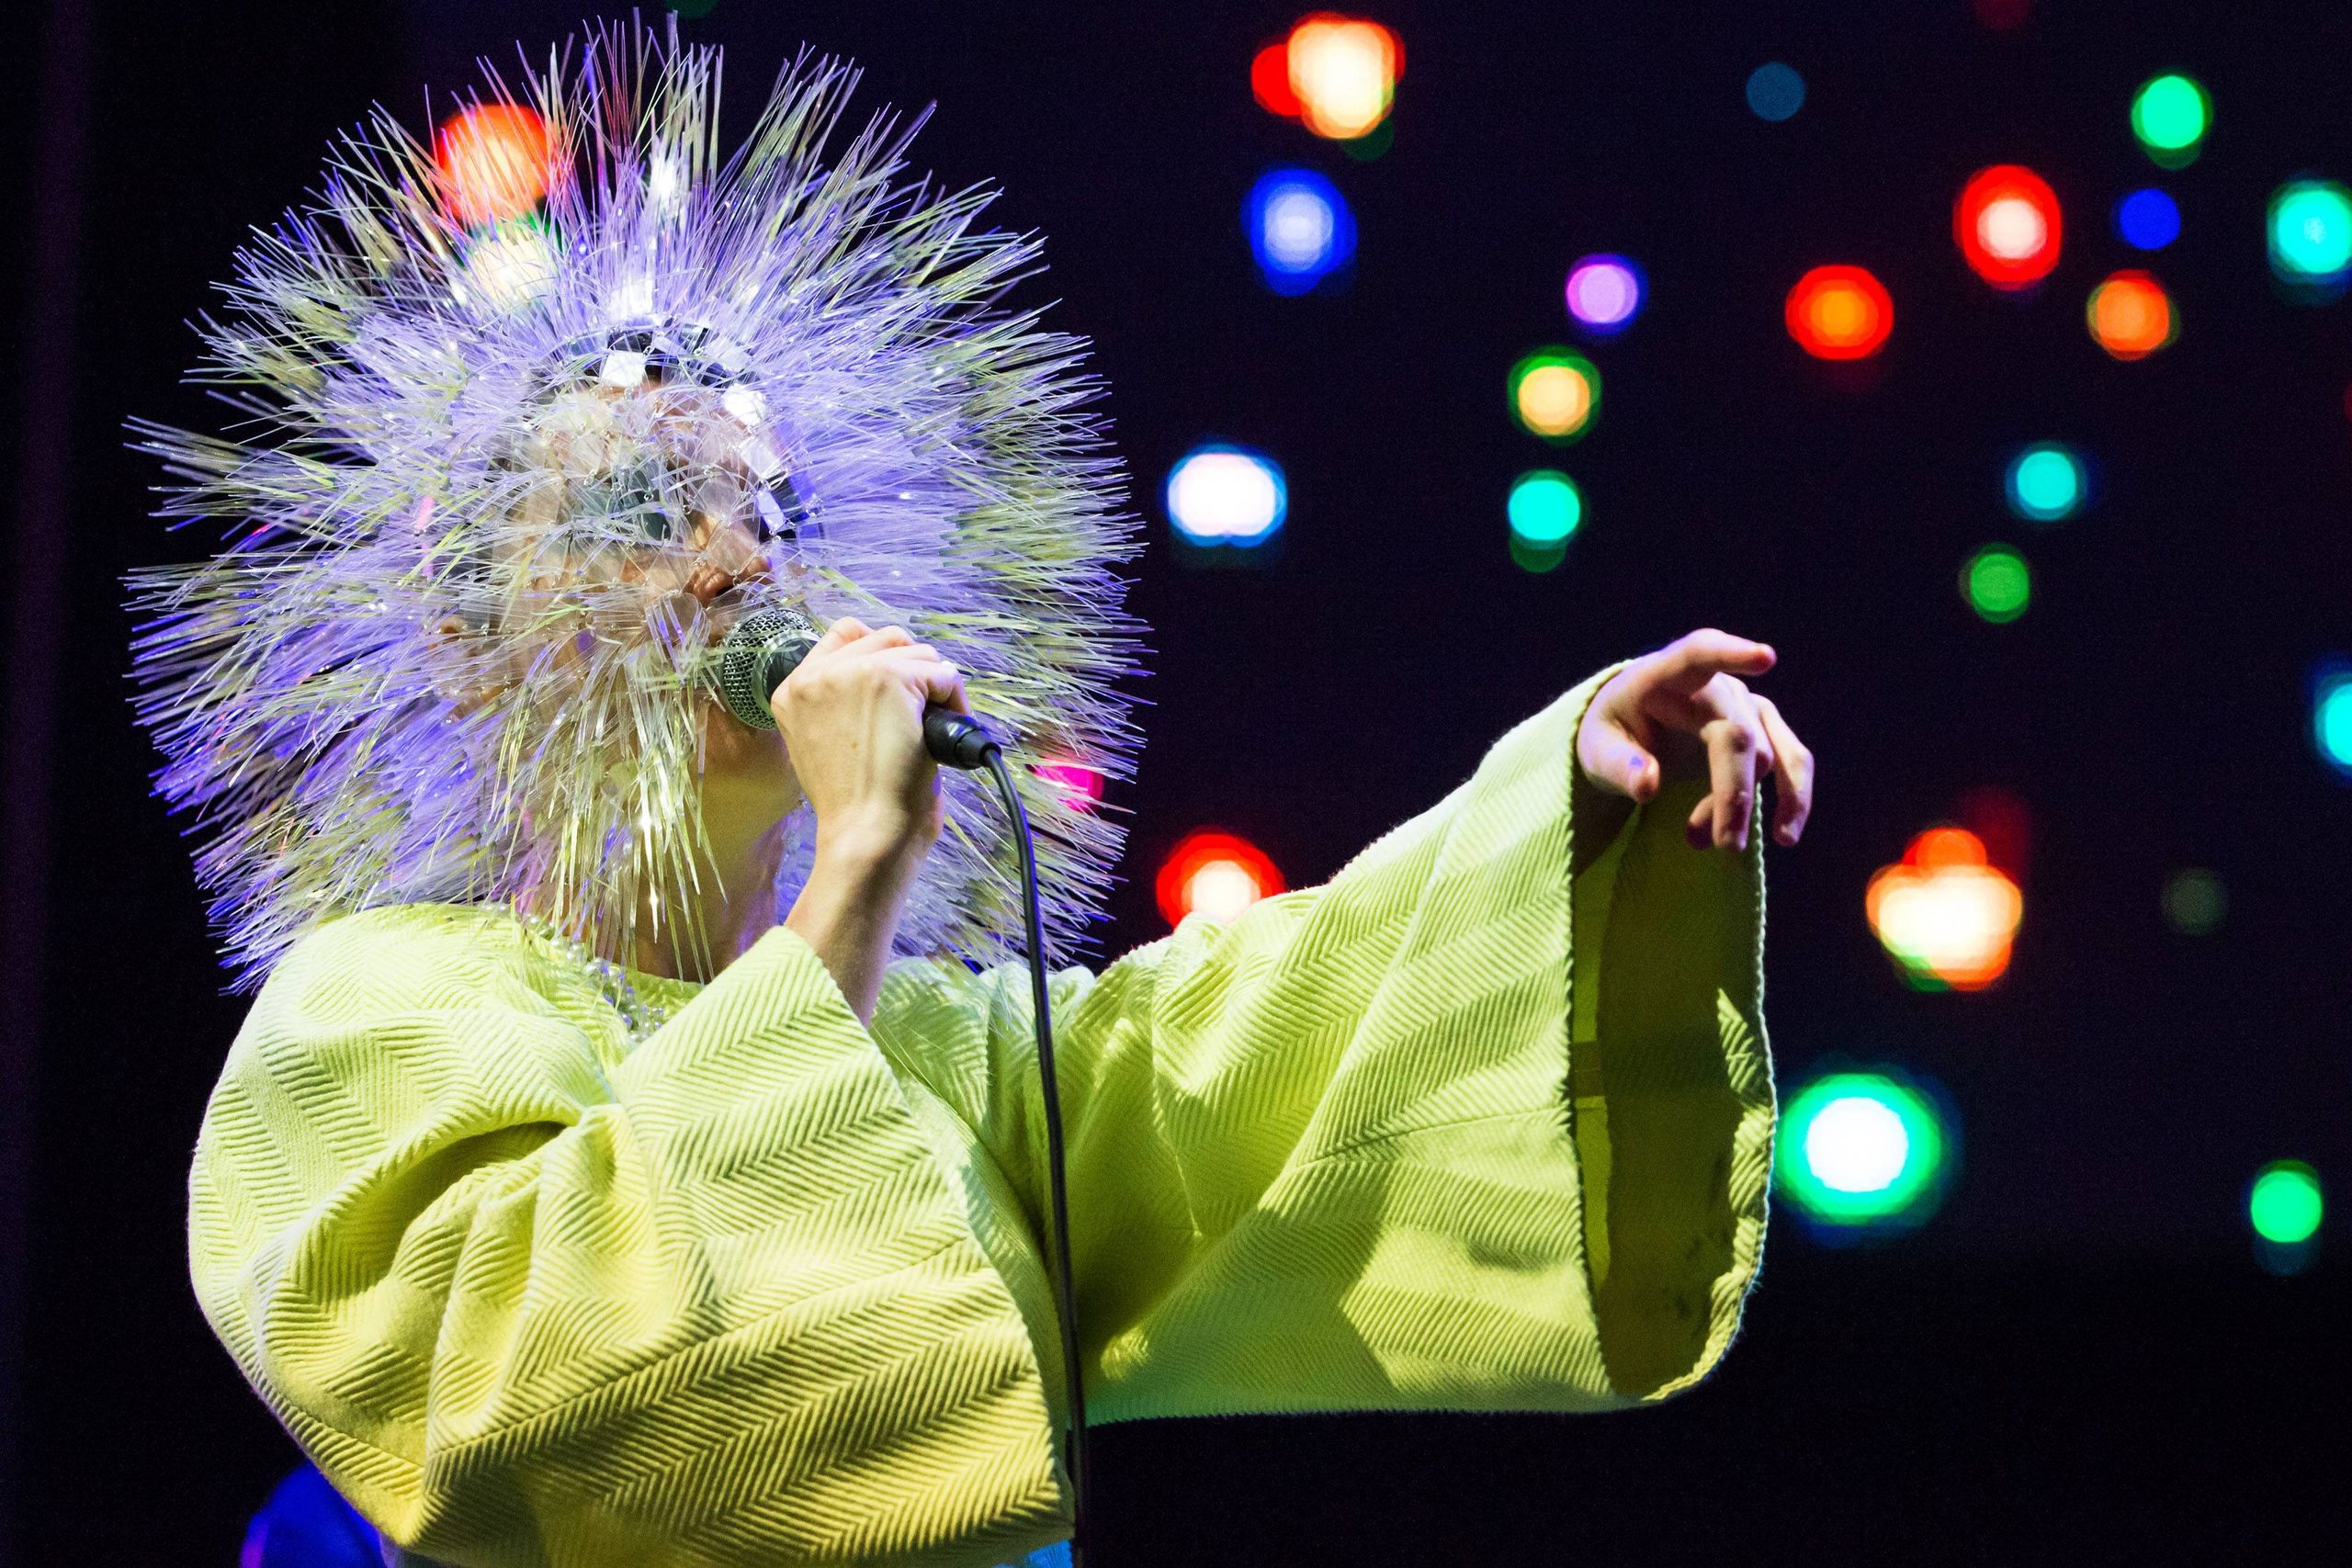 Sängerin Björk während eines Auftrittes im Rahmen des BERLIN FESTIVAL.